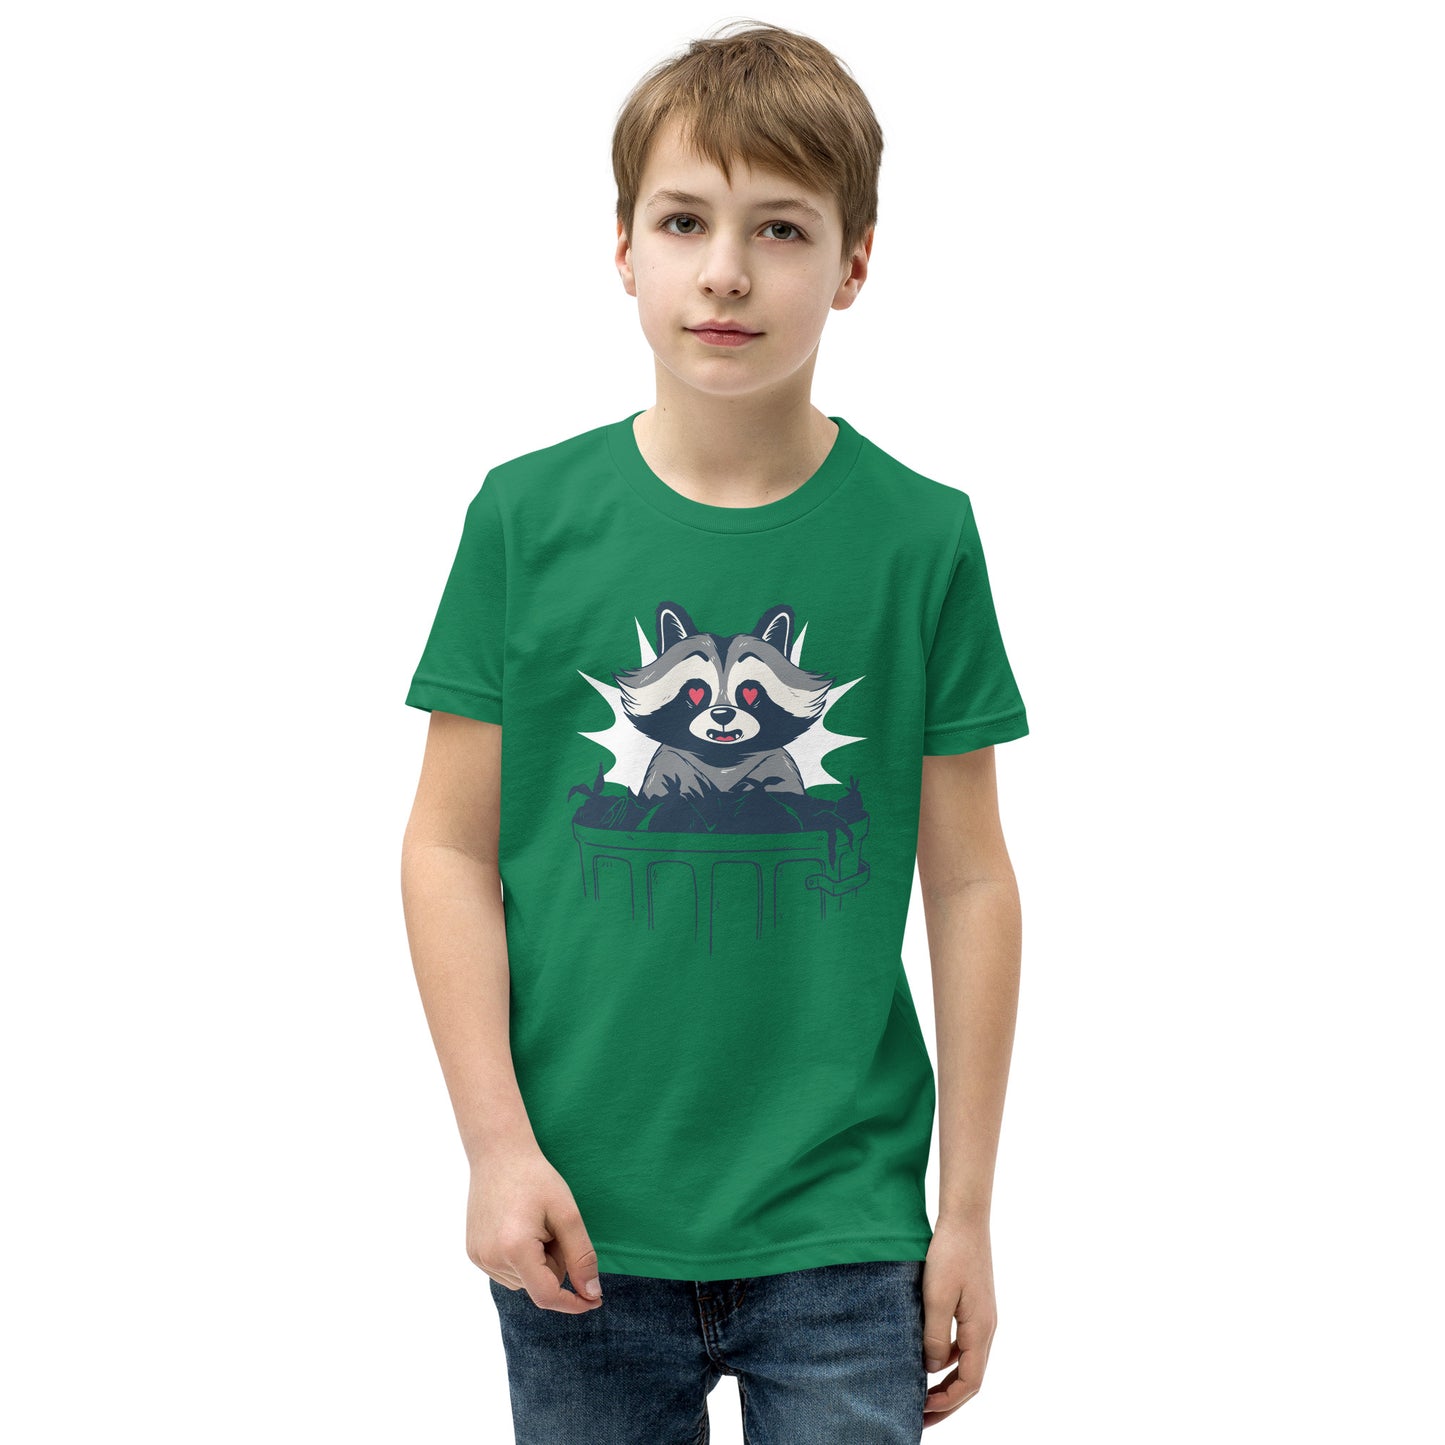 Trash Panda Youth Short Sleeve T-Shirt